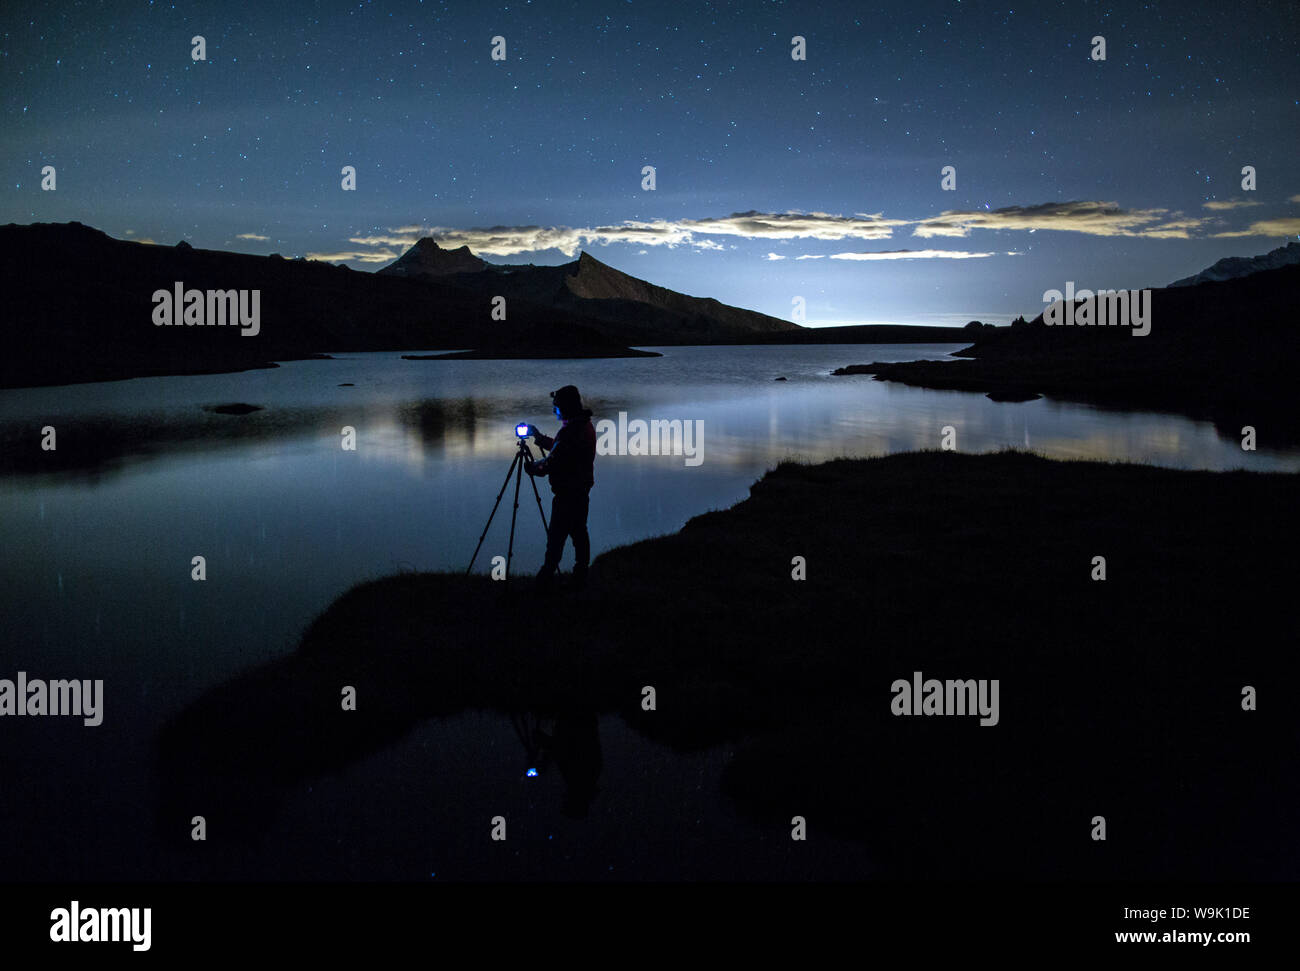 La réflexion sur l'admire photographe Rossett Lake la nuit, Parc National du Gran Paradiso, Alpi Graie (Graian Alps), Italy, Europe Banque D'Images